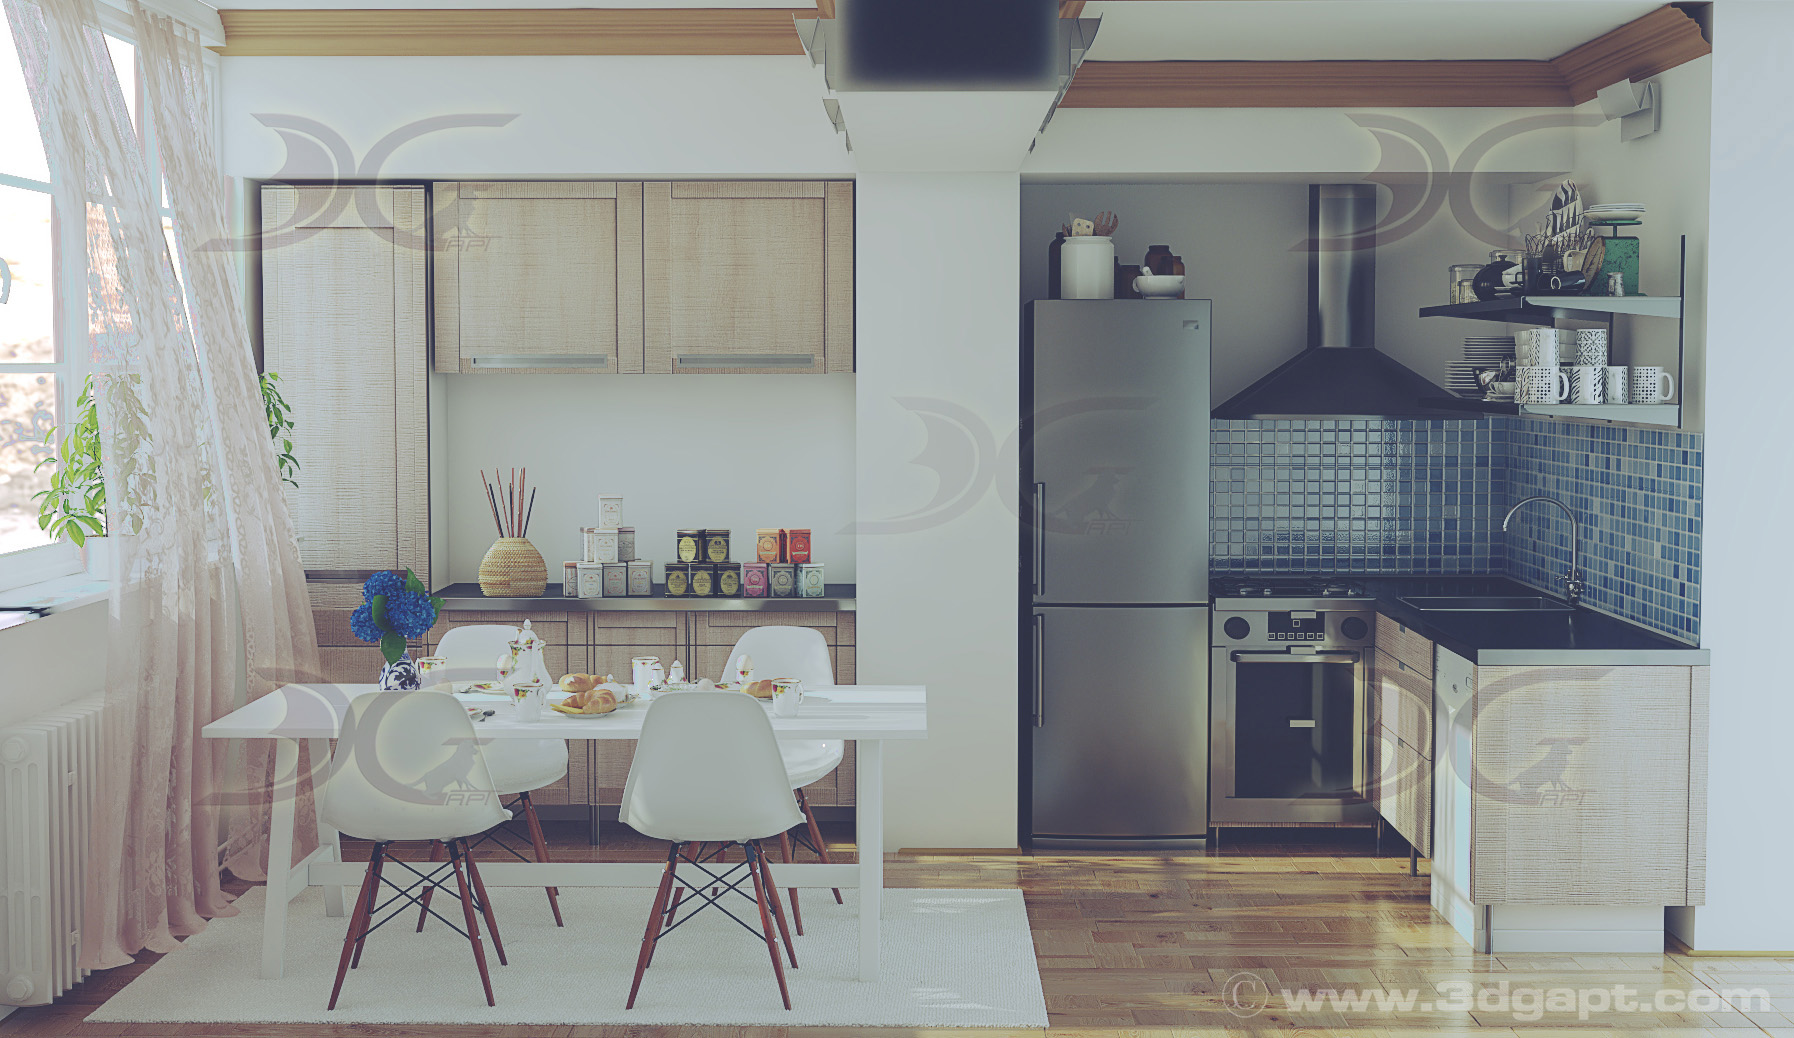 architecture interior kitchen-2versions 018